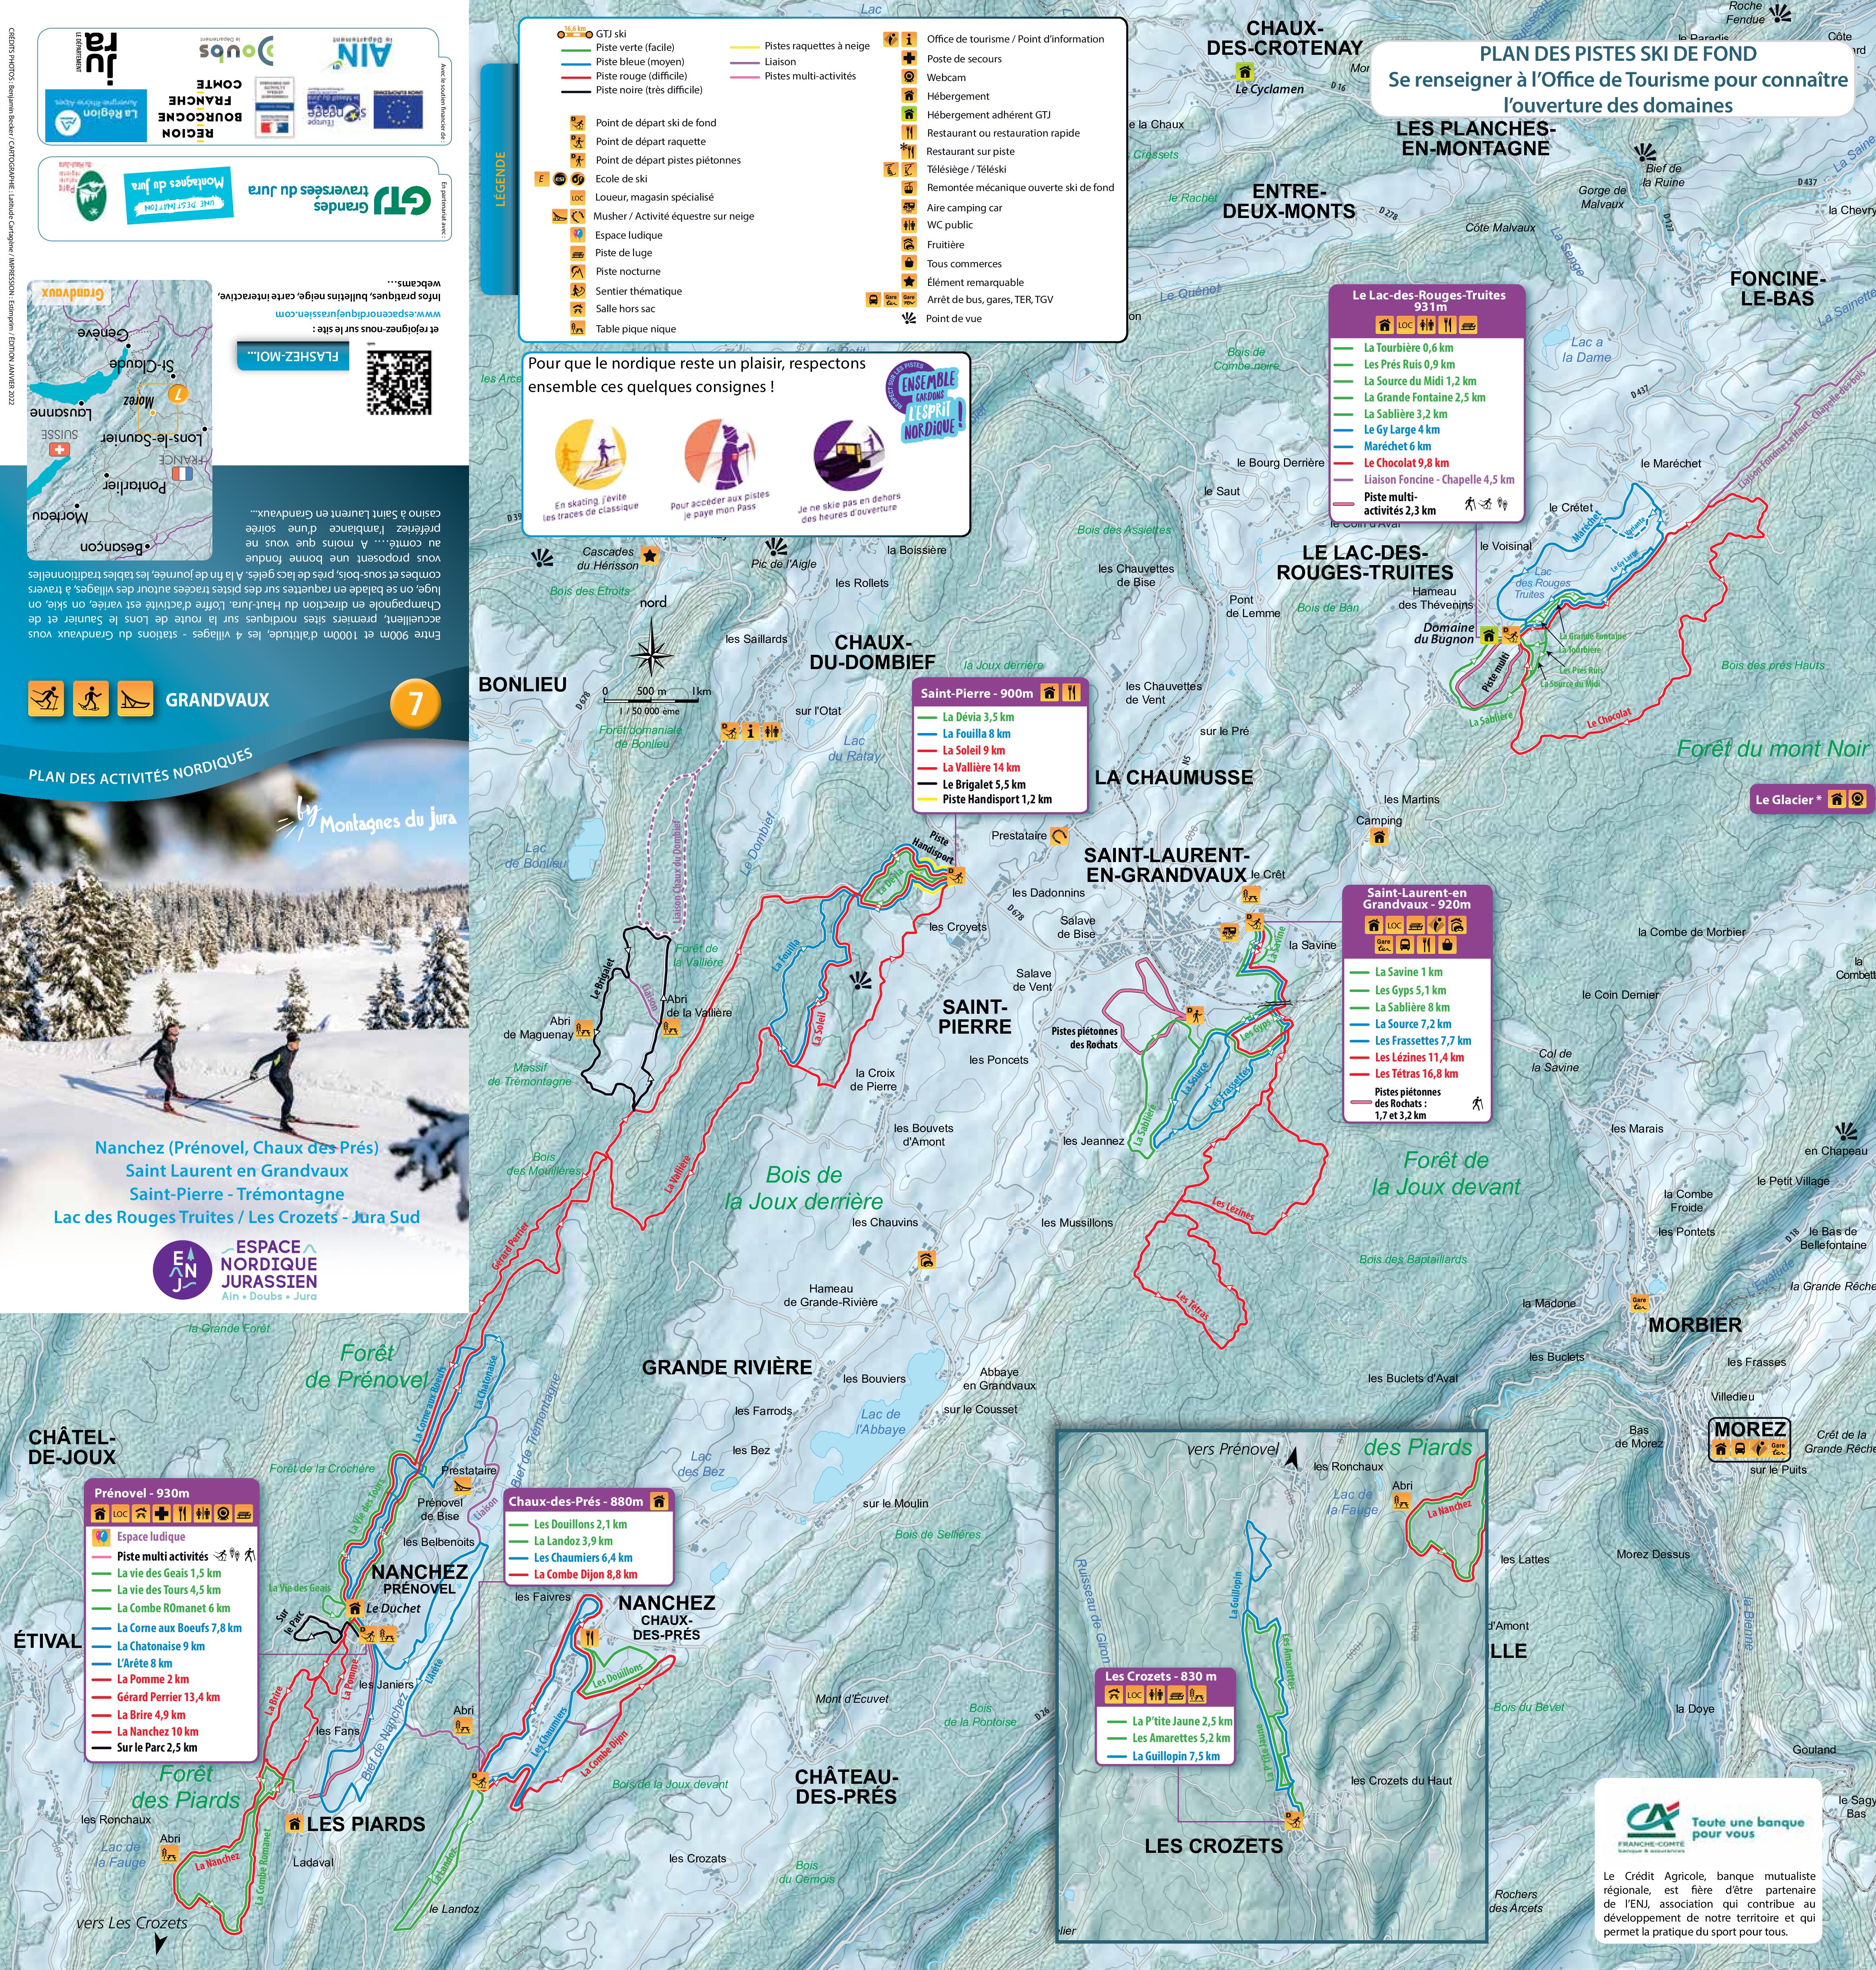 Plan de pistes ski de fond Grandvaux